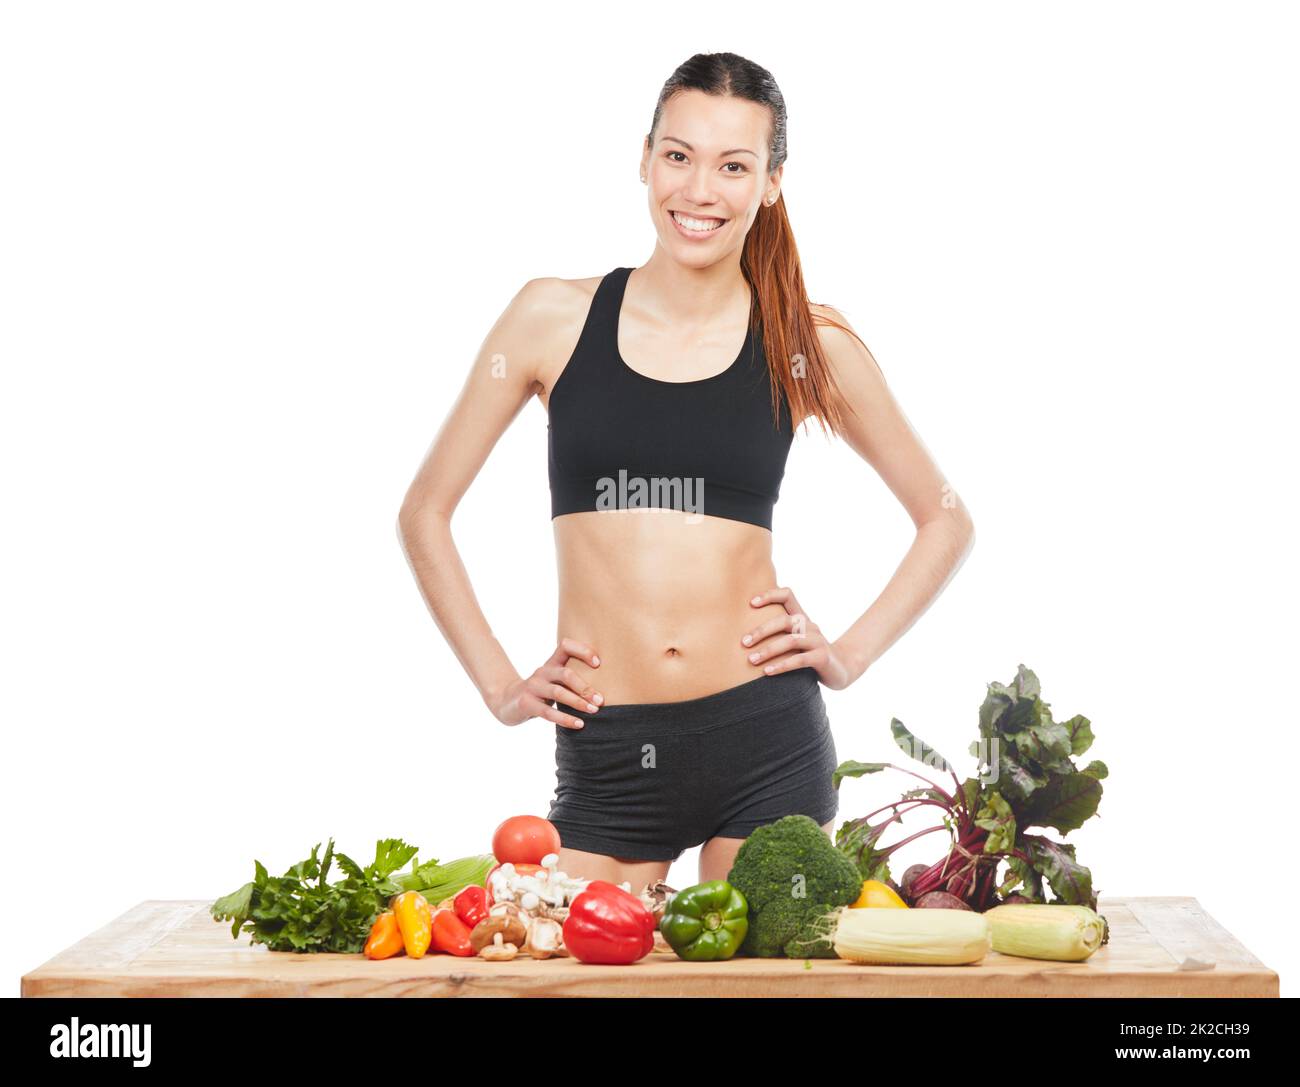 Machen Sie eine gesunde Ernährung Ihre Gewohnheit. Studioporträt einer attraktiven jungen Frau, die mit einem Tisch voller Gemüse vor weißem Hintergrund posiert. Stockfoto